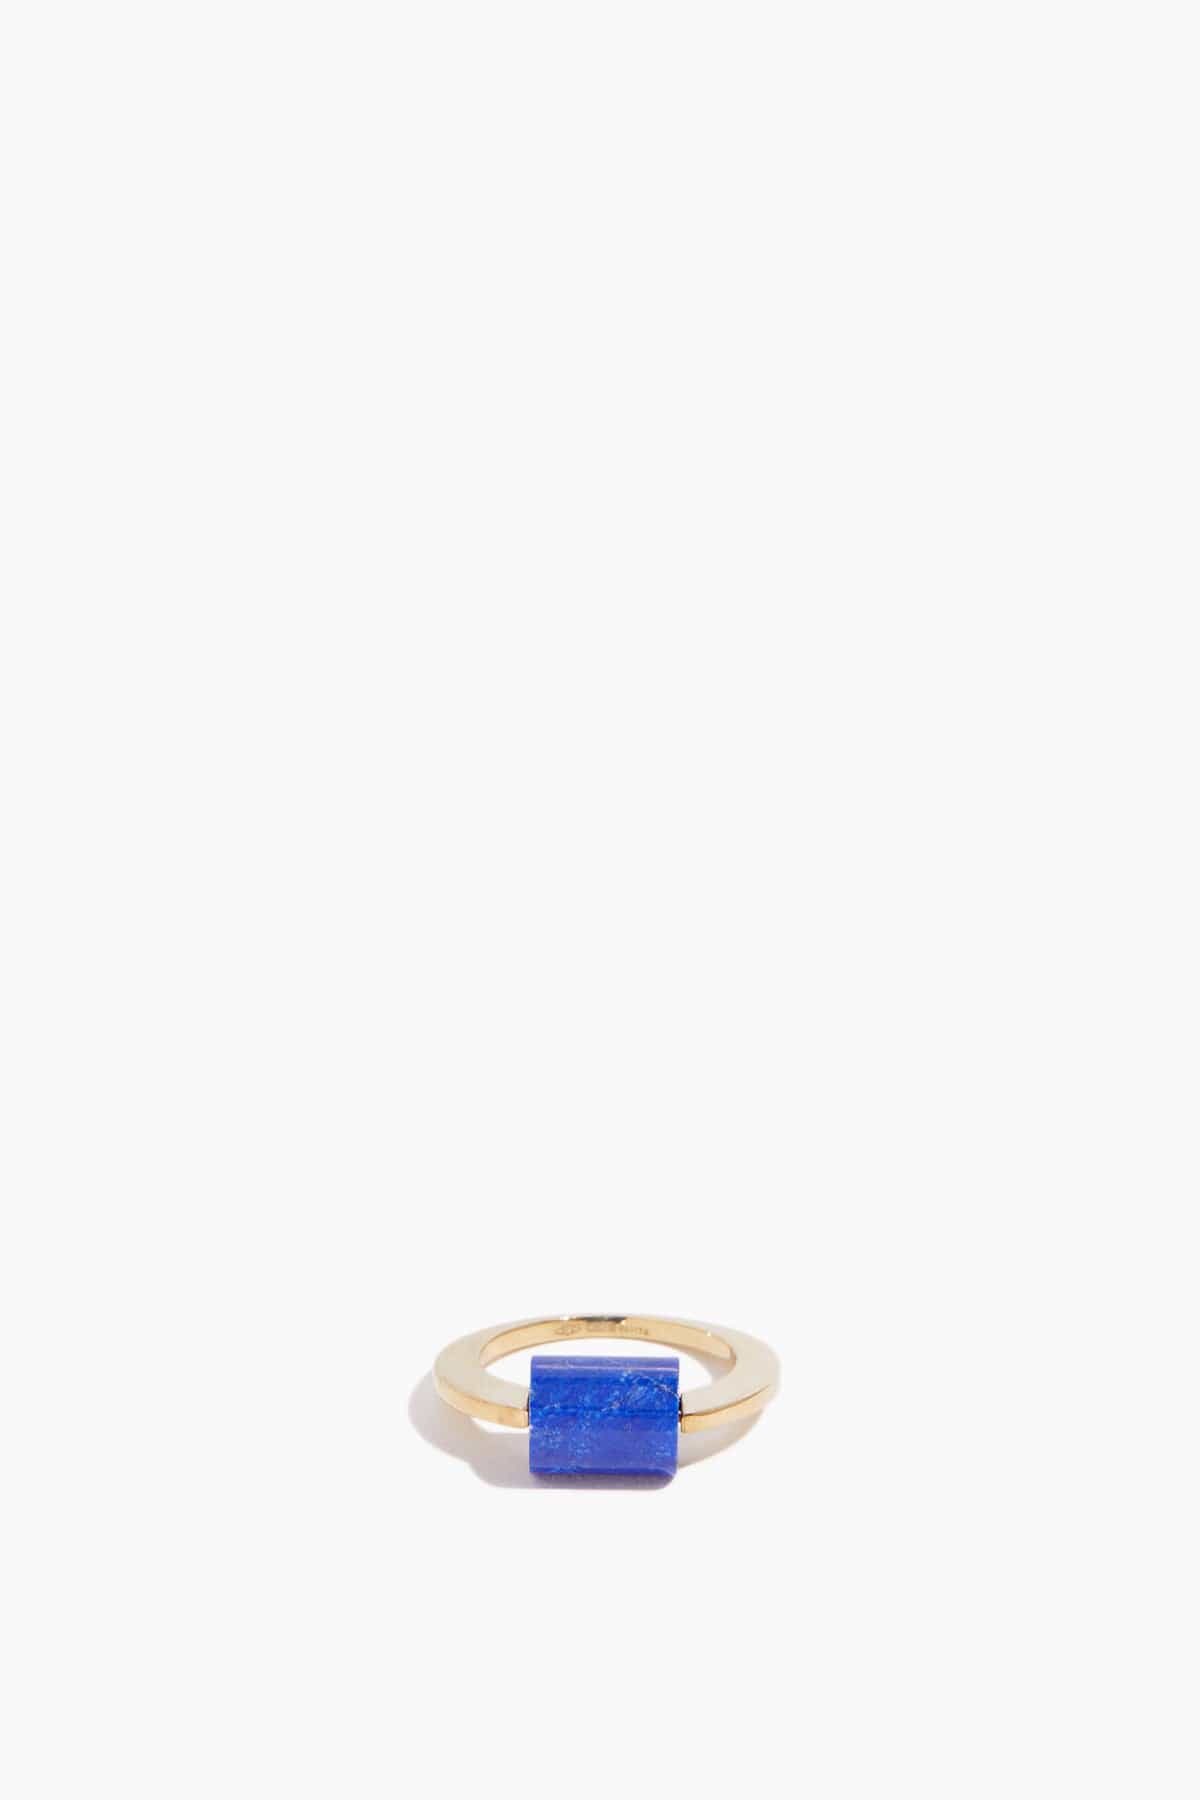 Aliita Deco Cilindro Ring in Lapis Lazuli - Size: 13 / 6 US